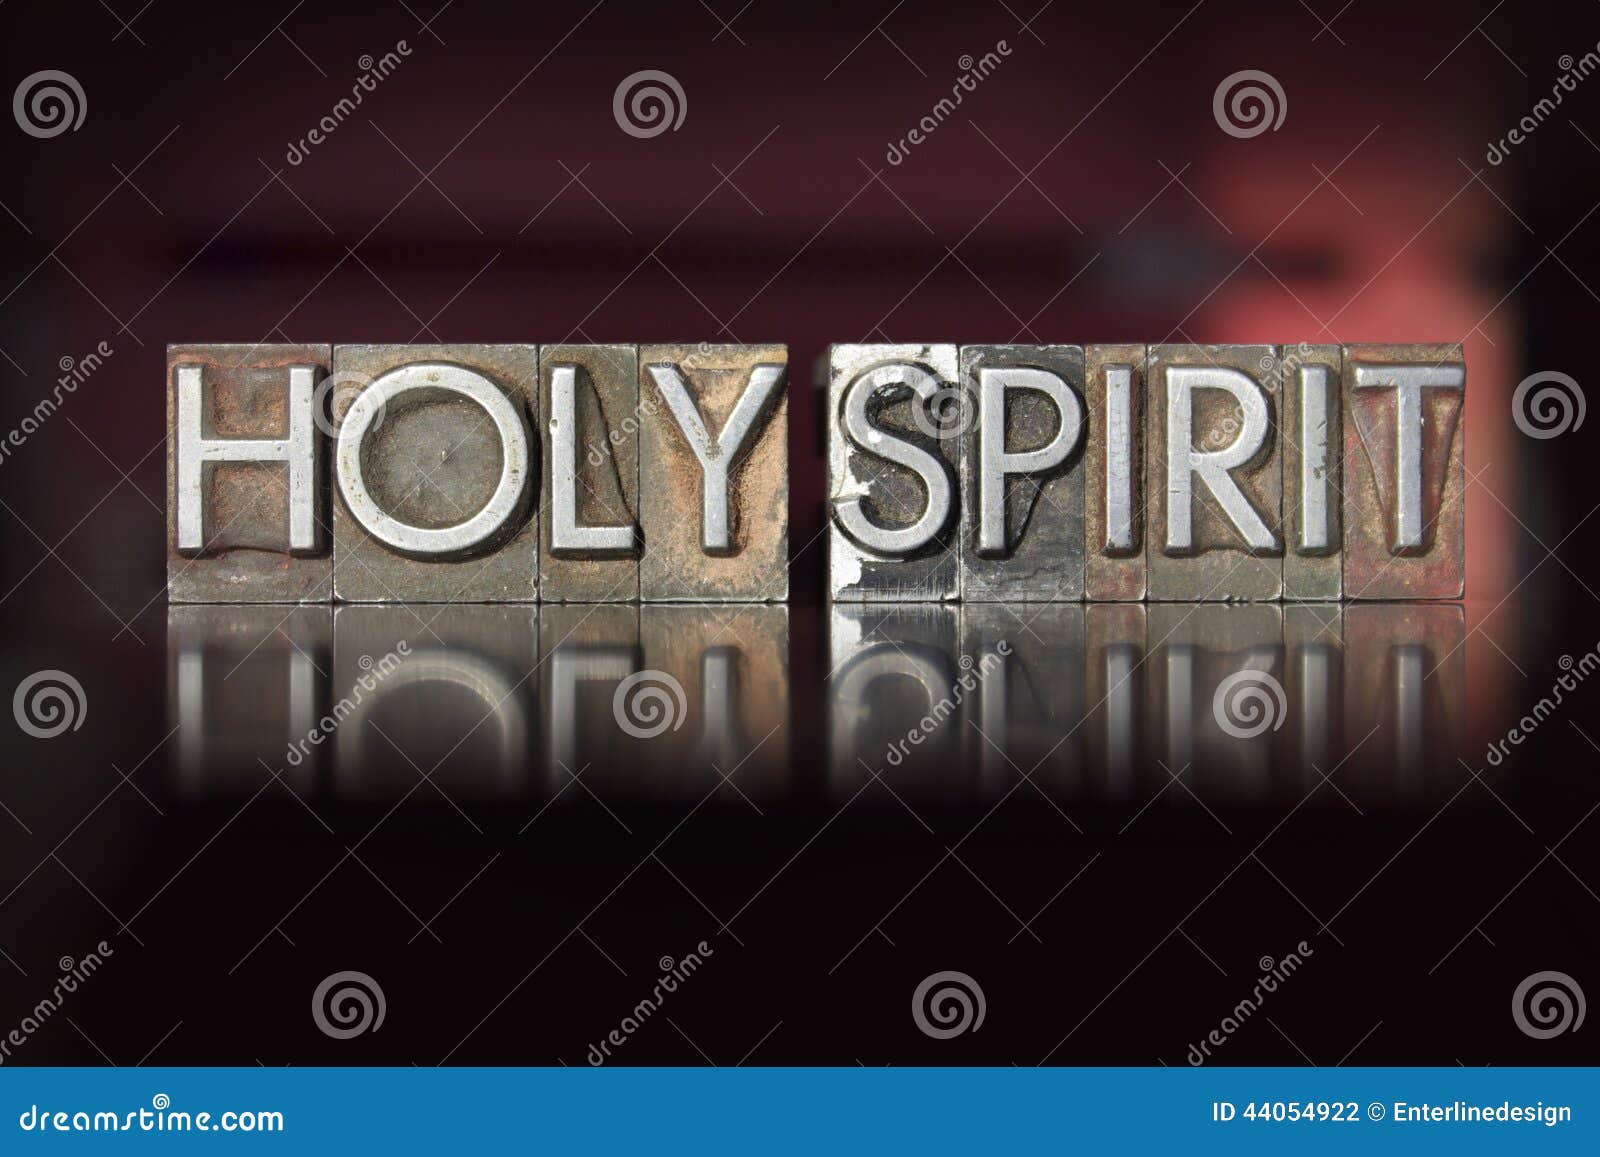 holy spirit letterpress